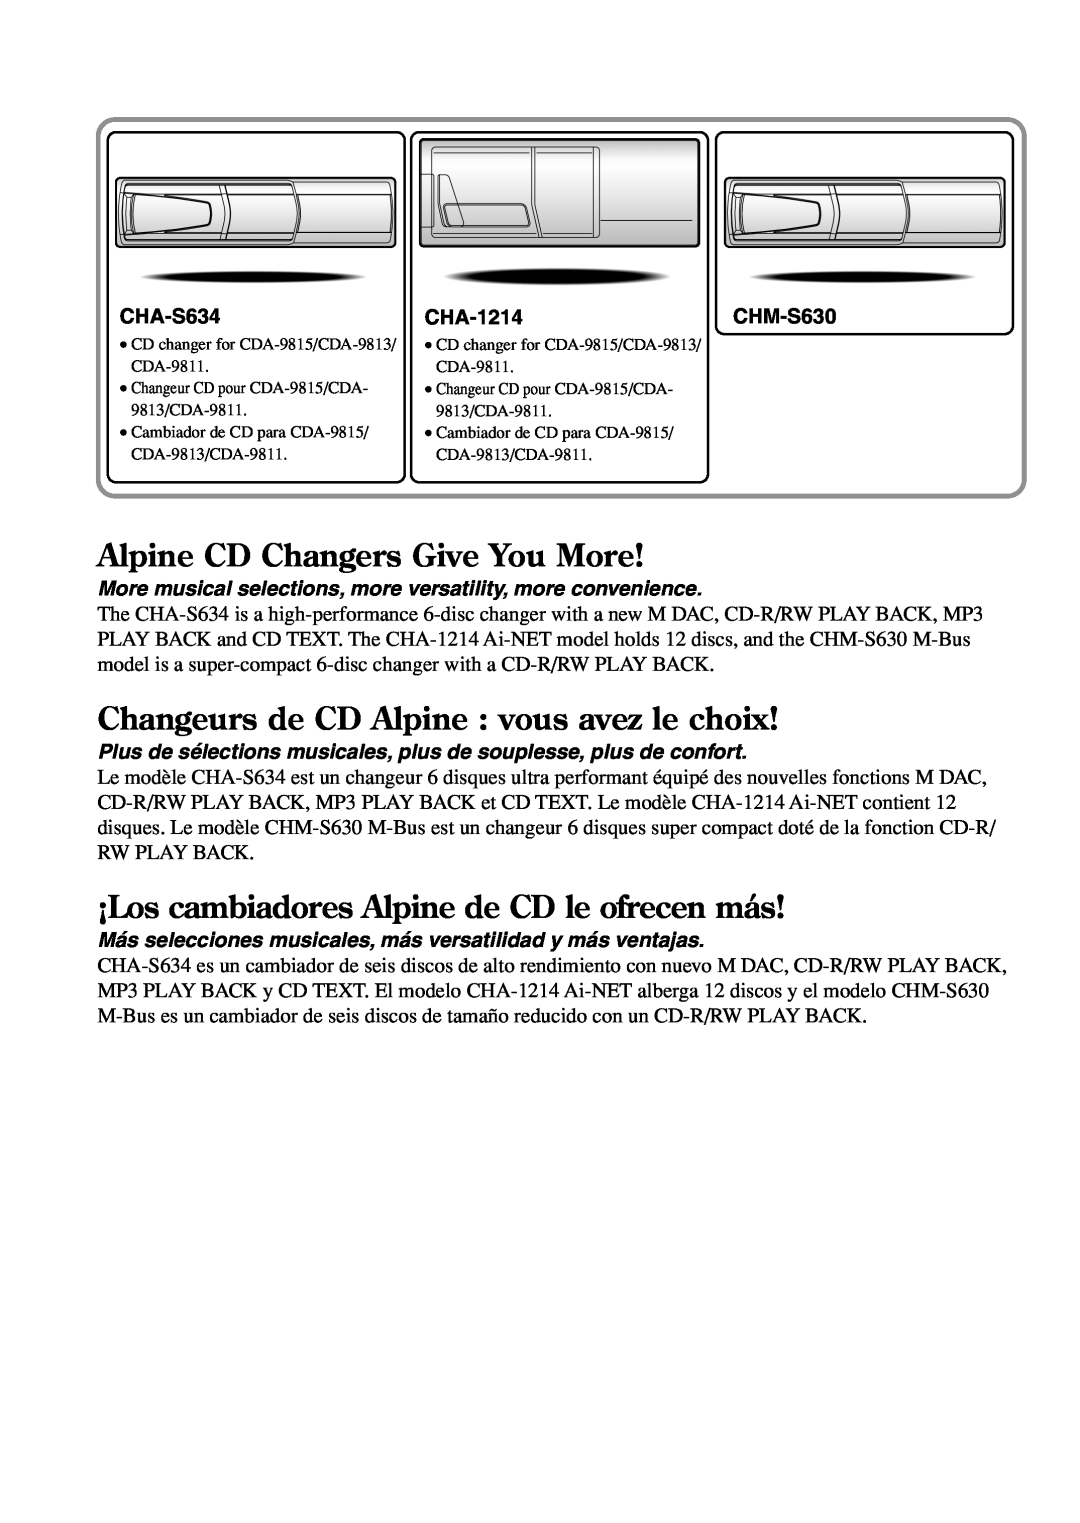 Alpine CDA-9815 Alpine CD Changers Give You More, Changeurs de CD Alpine vous avez le choix, CHA-S634, CHA-1214CHM-S630 